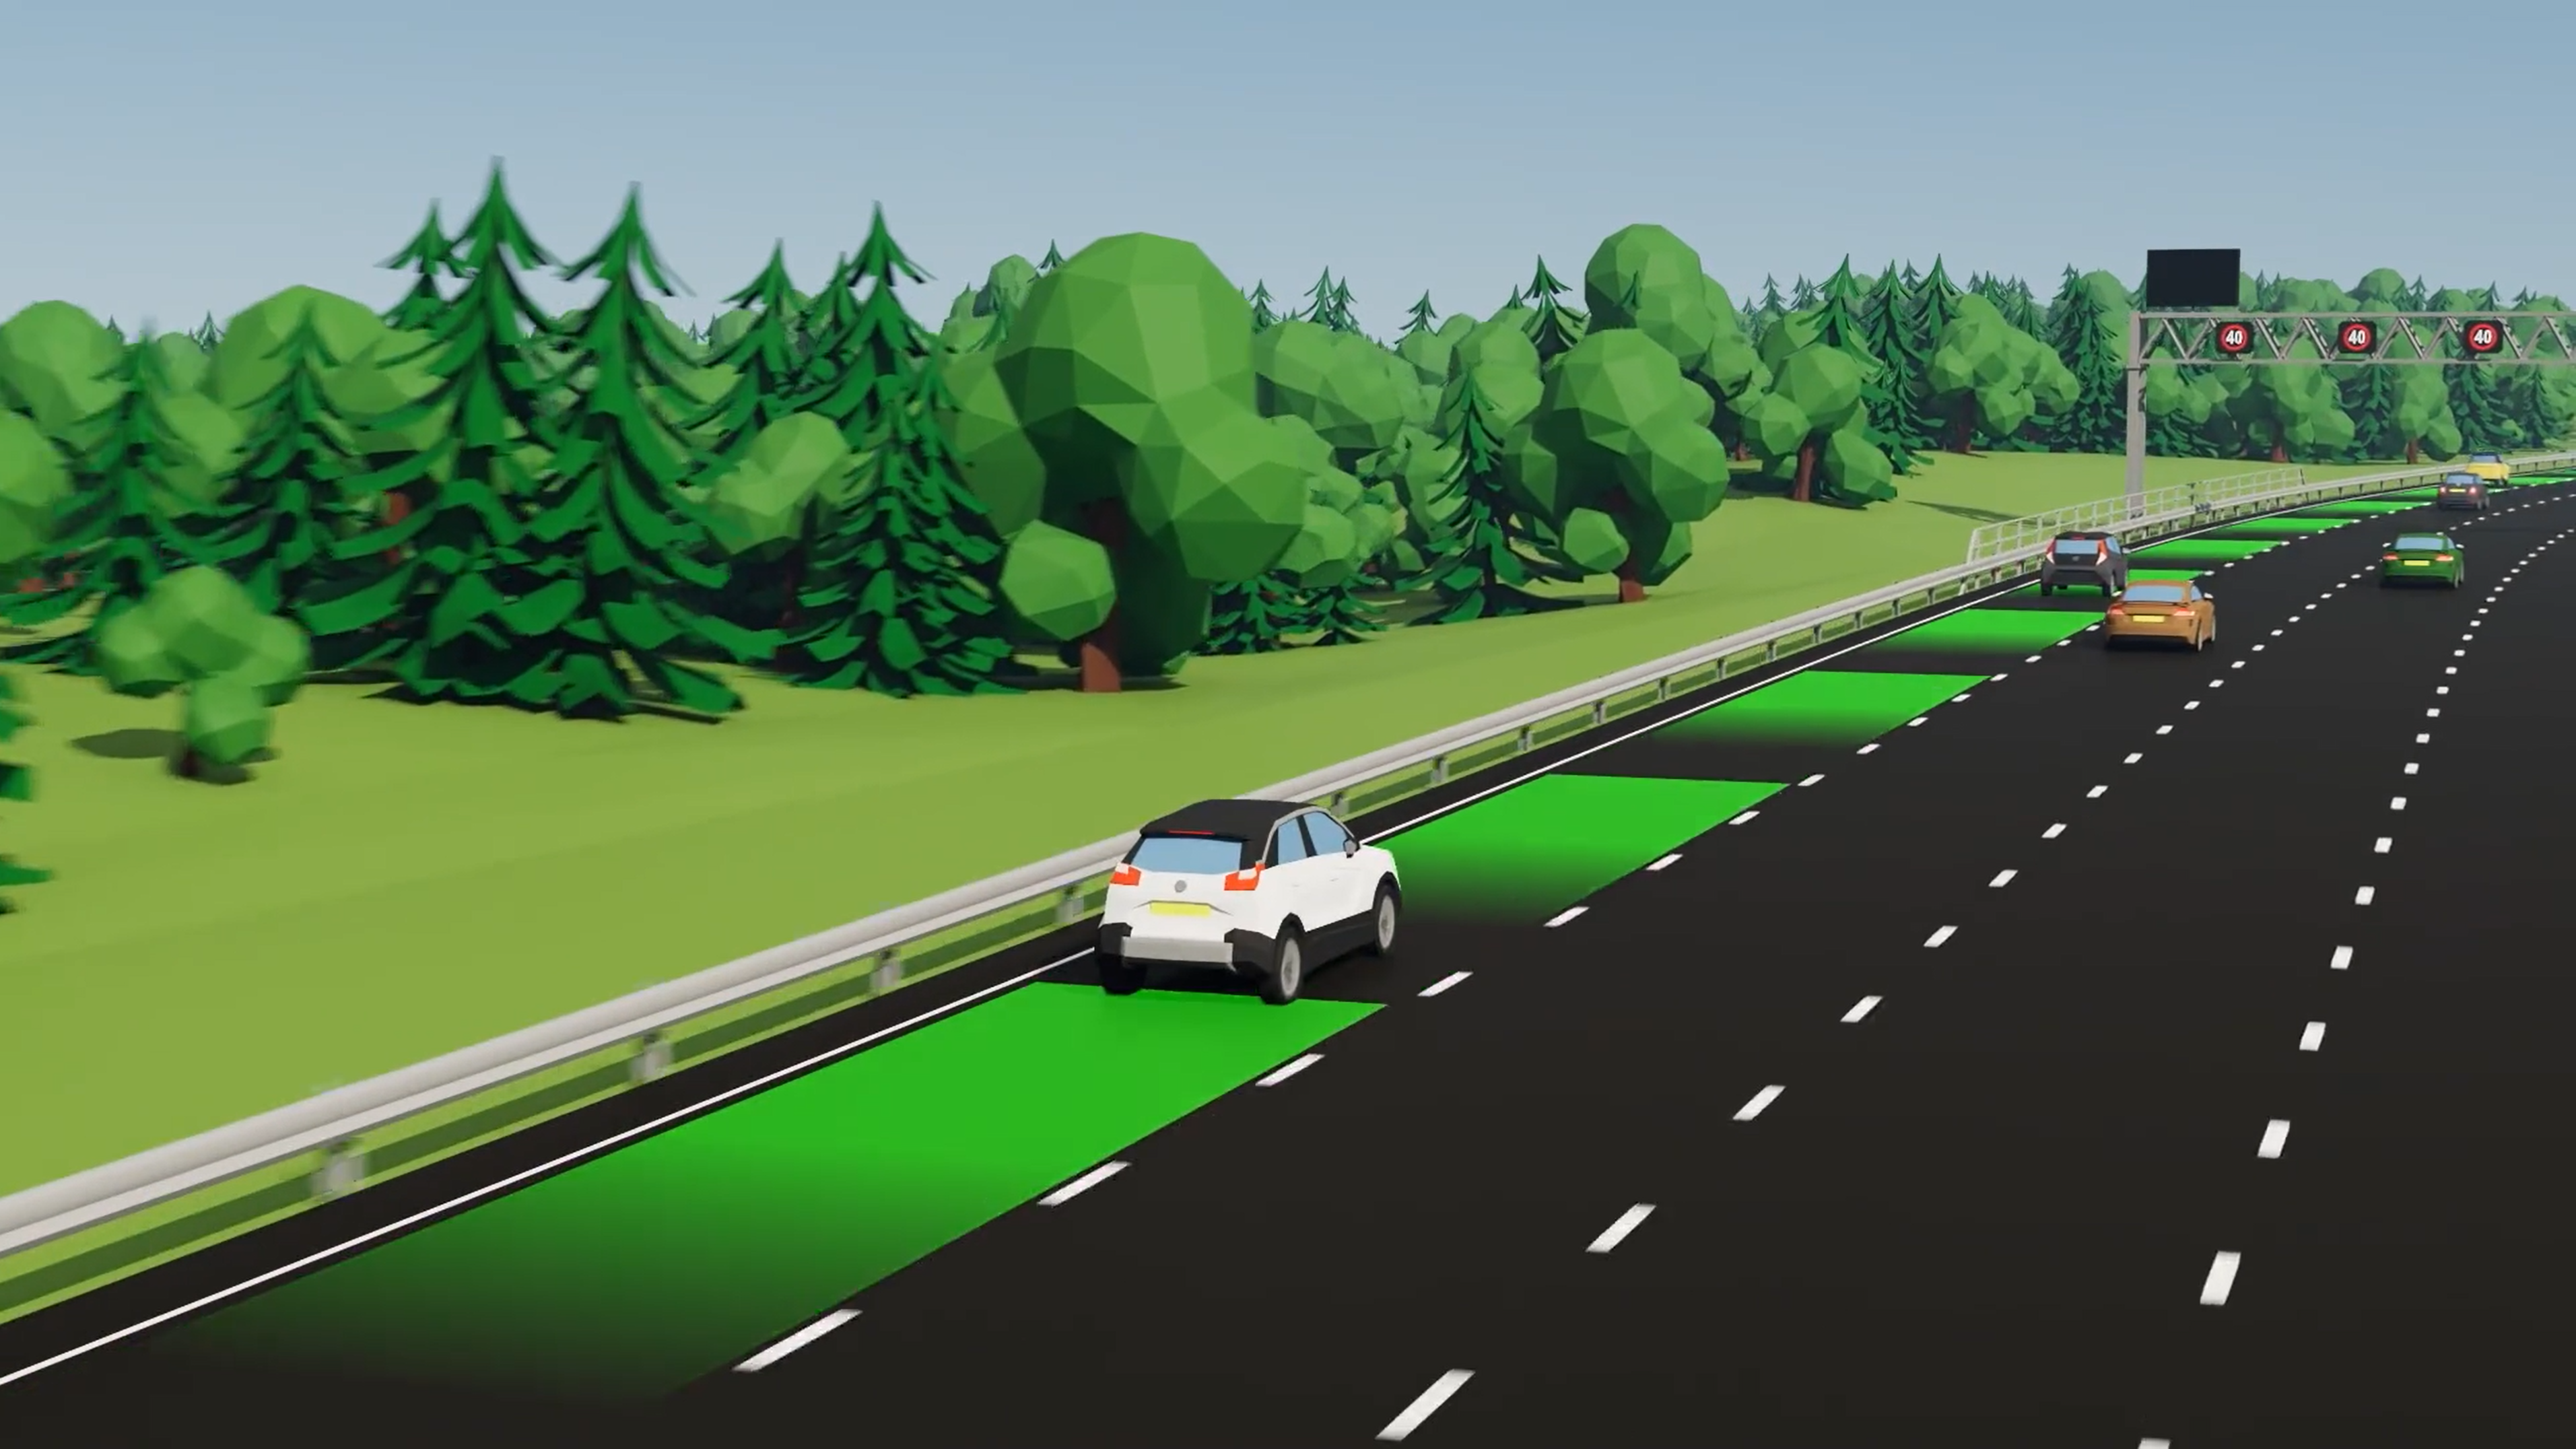 smart motorway works as a syatem